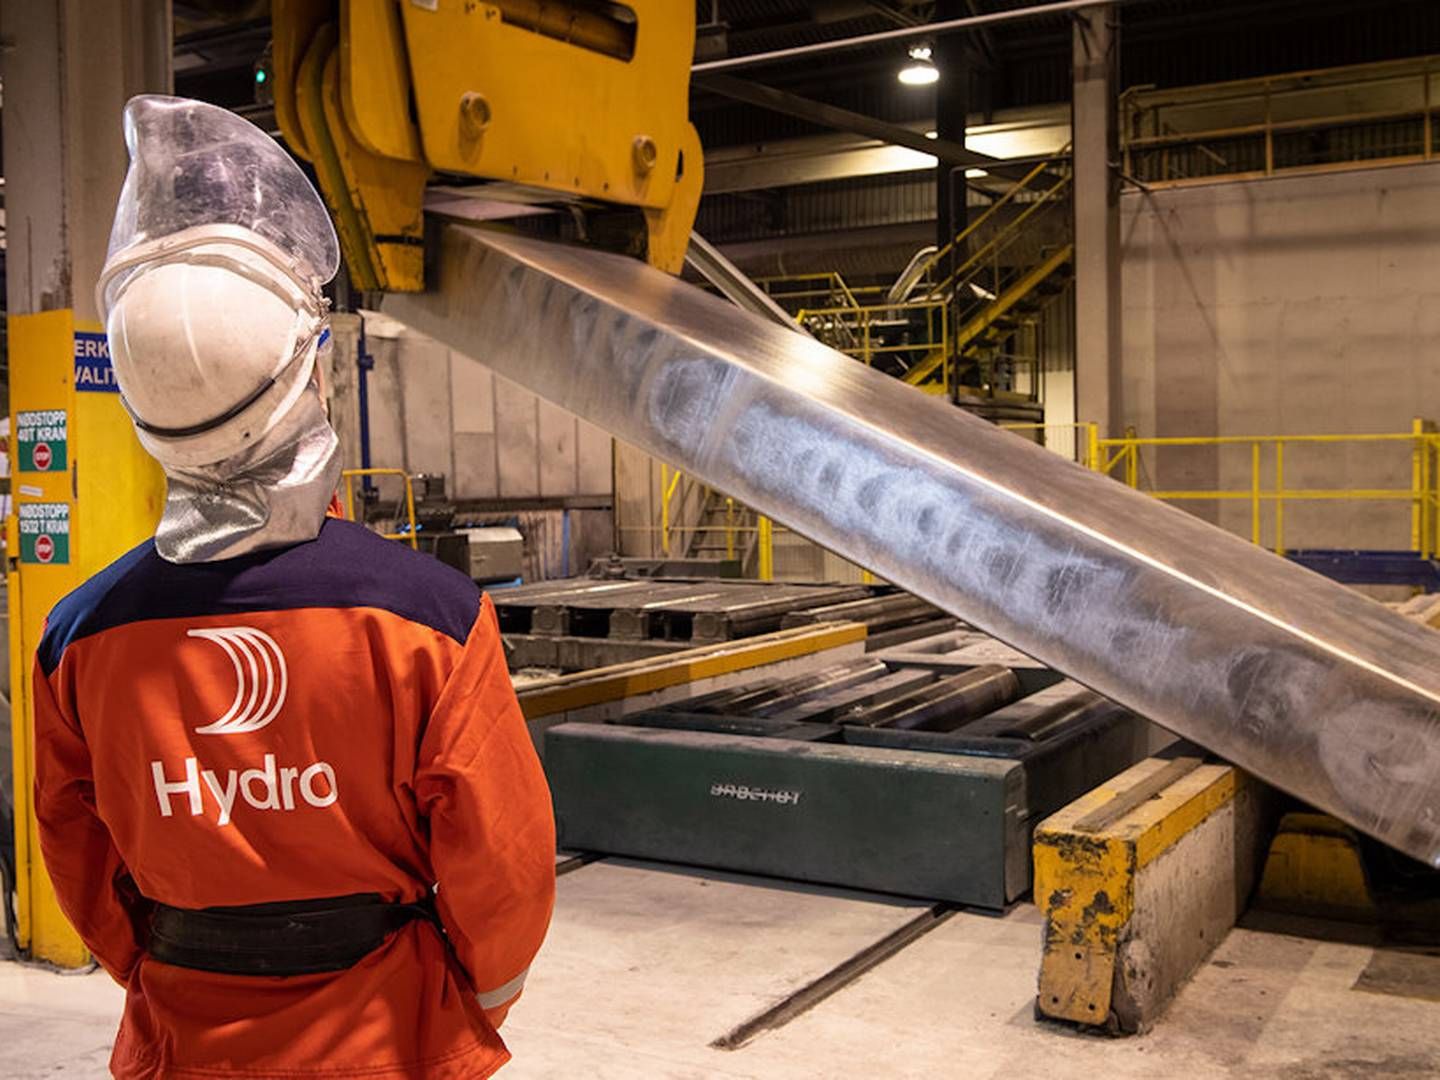 MOTSTAND: Hydro sier det nye prosjektene vil gi kraft til deres fabrikk i Høyanger, og annen industri i området. Nå møter satsingen motstand fra grunneiere. | Foto: Halvor Molland/Hydro